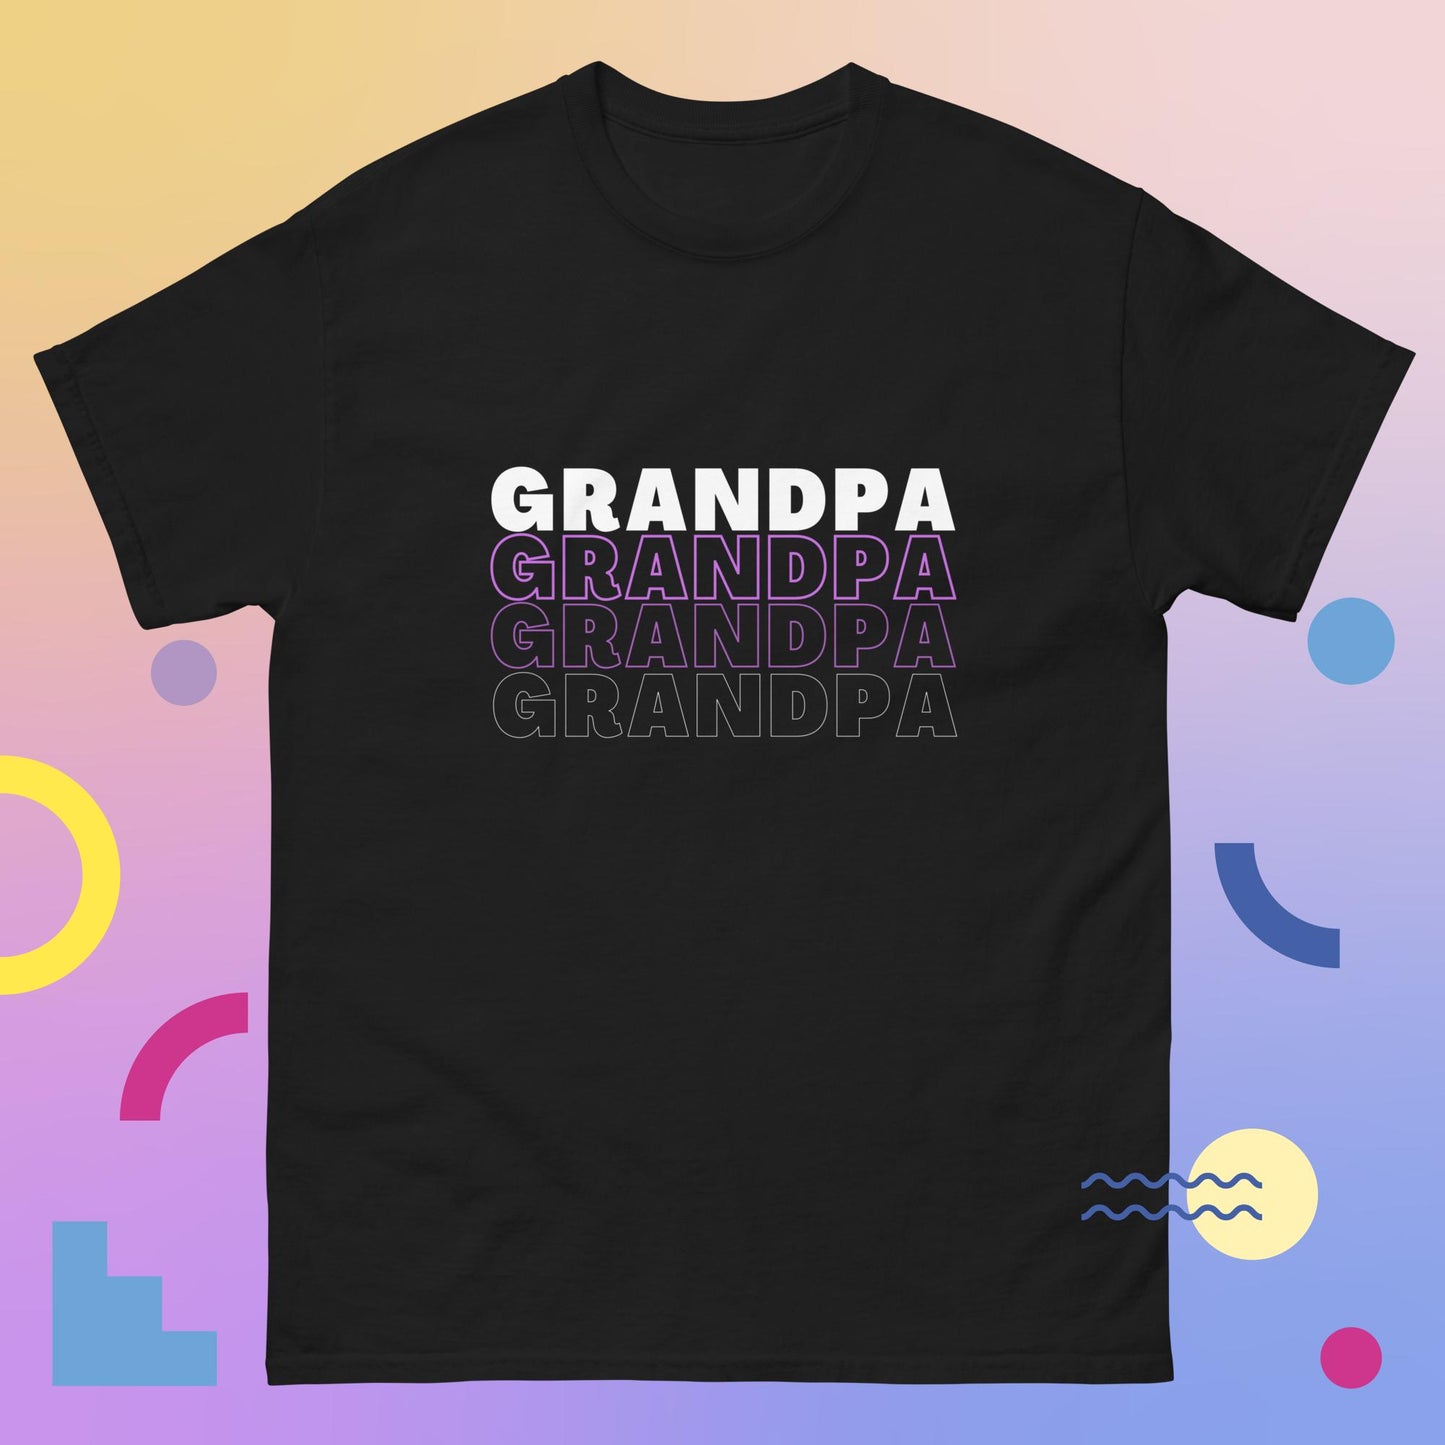 (Grandpa) Family Tees Men's classic tee